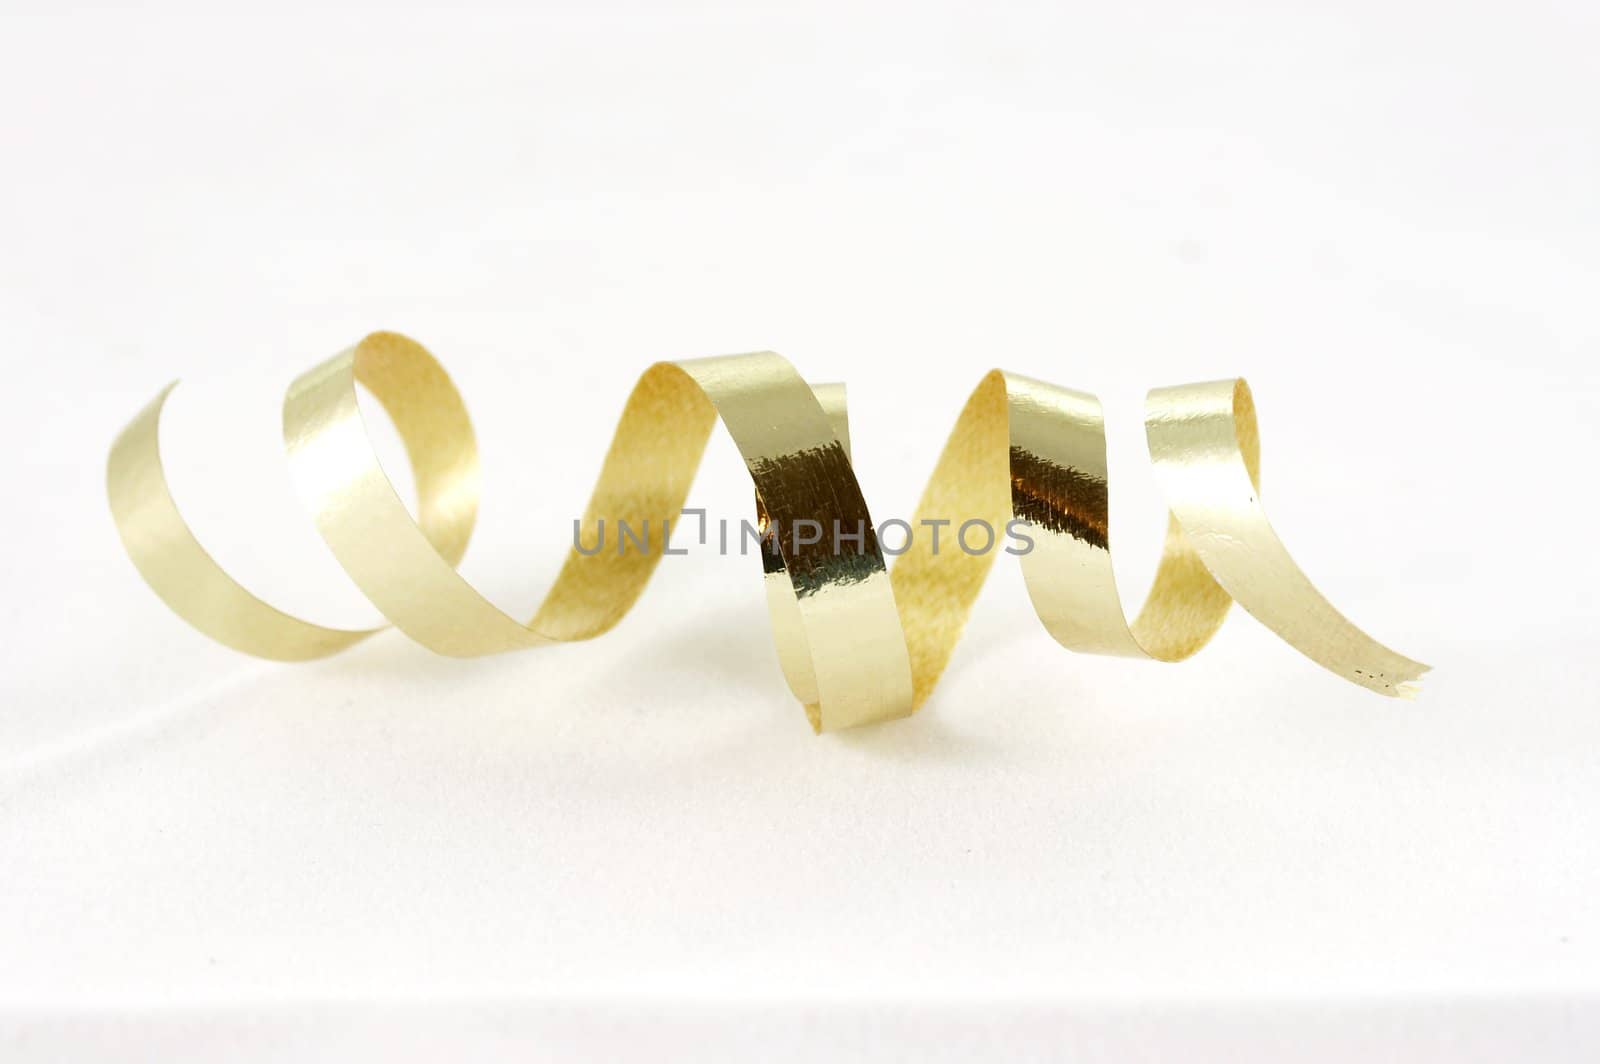 a macro photograph of gold ribbon